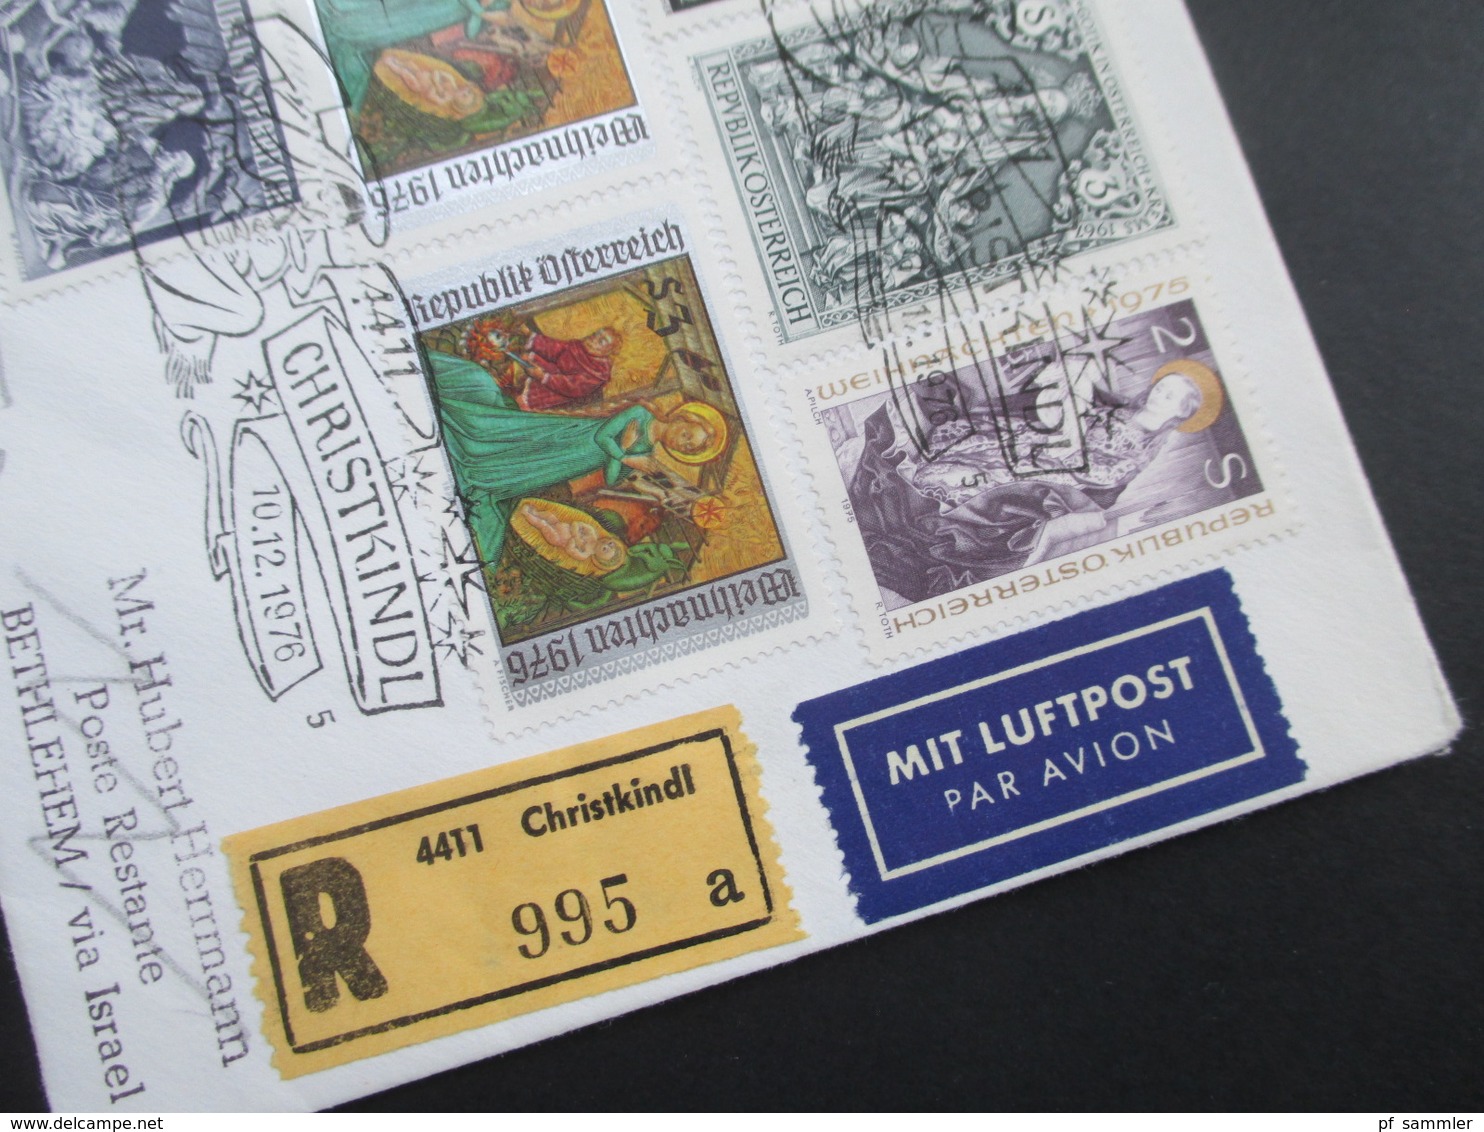 Österreich 1976 Christkindl Einschreiben / Luftpost Nach Bethlehem Via Israel. Poste Restante. Retour Mit Israel Marken! - Covers & Documents